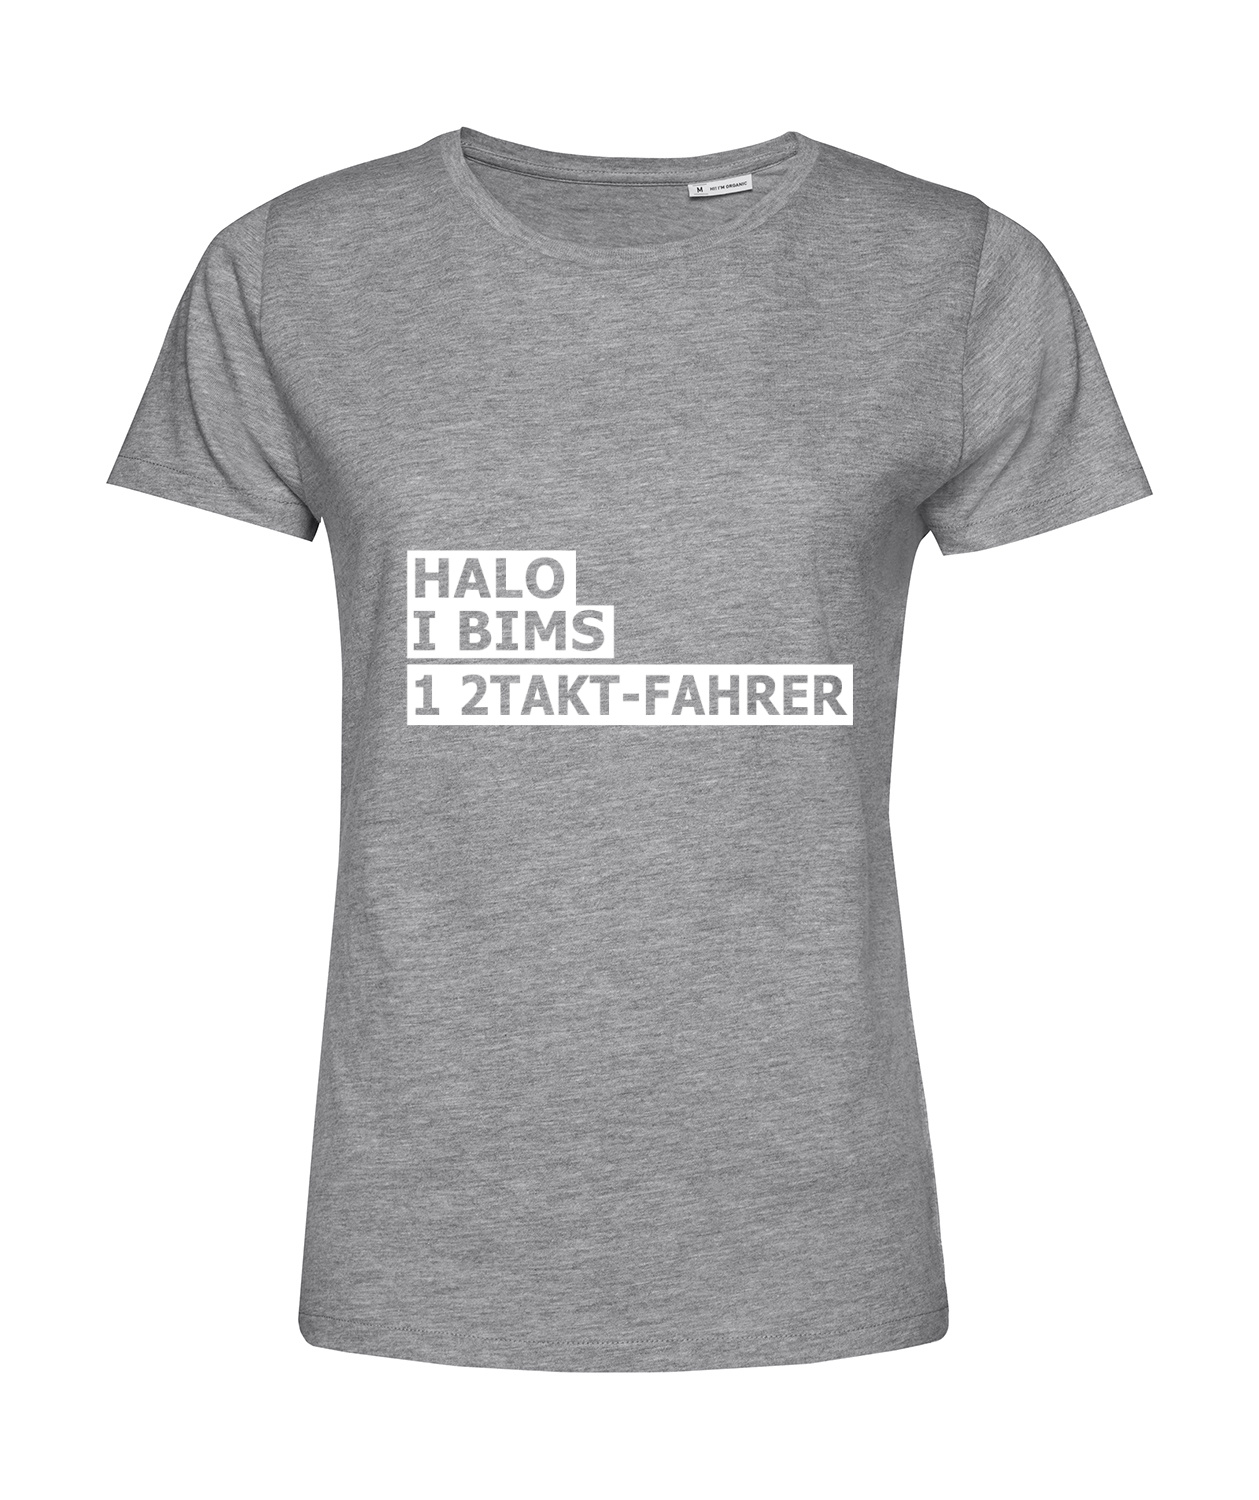 Nachhaltiges T-Shirt Damen 2Takter - Halo I bims 1 2Takt-Fahrer